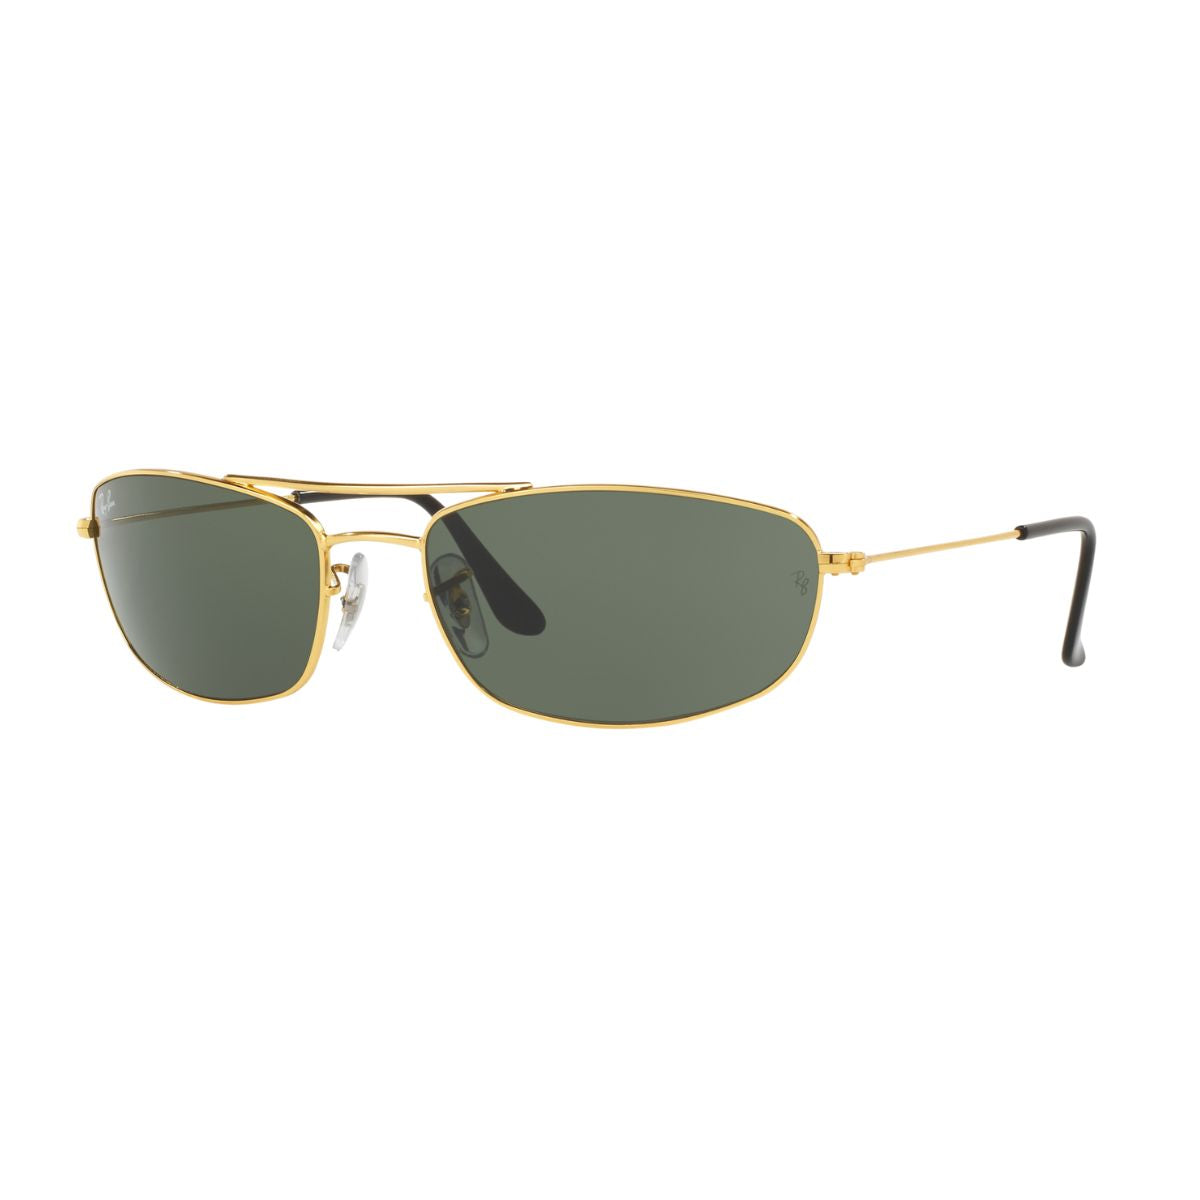 "Buy Rayban  3383 001 UV Resistant Sunglasses For Men At Optorium""